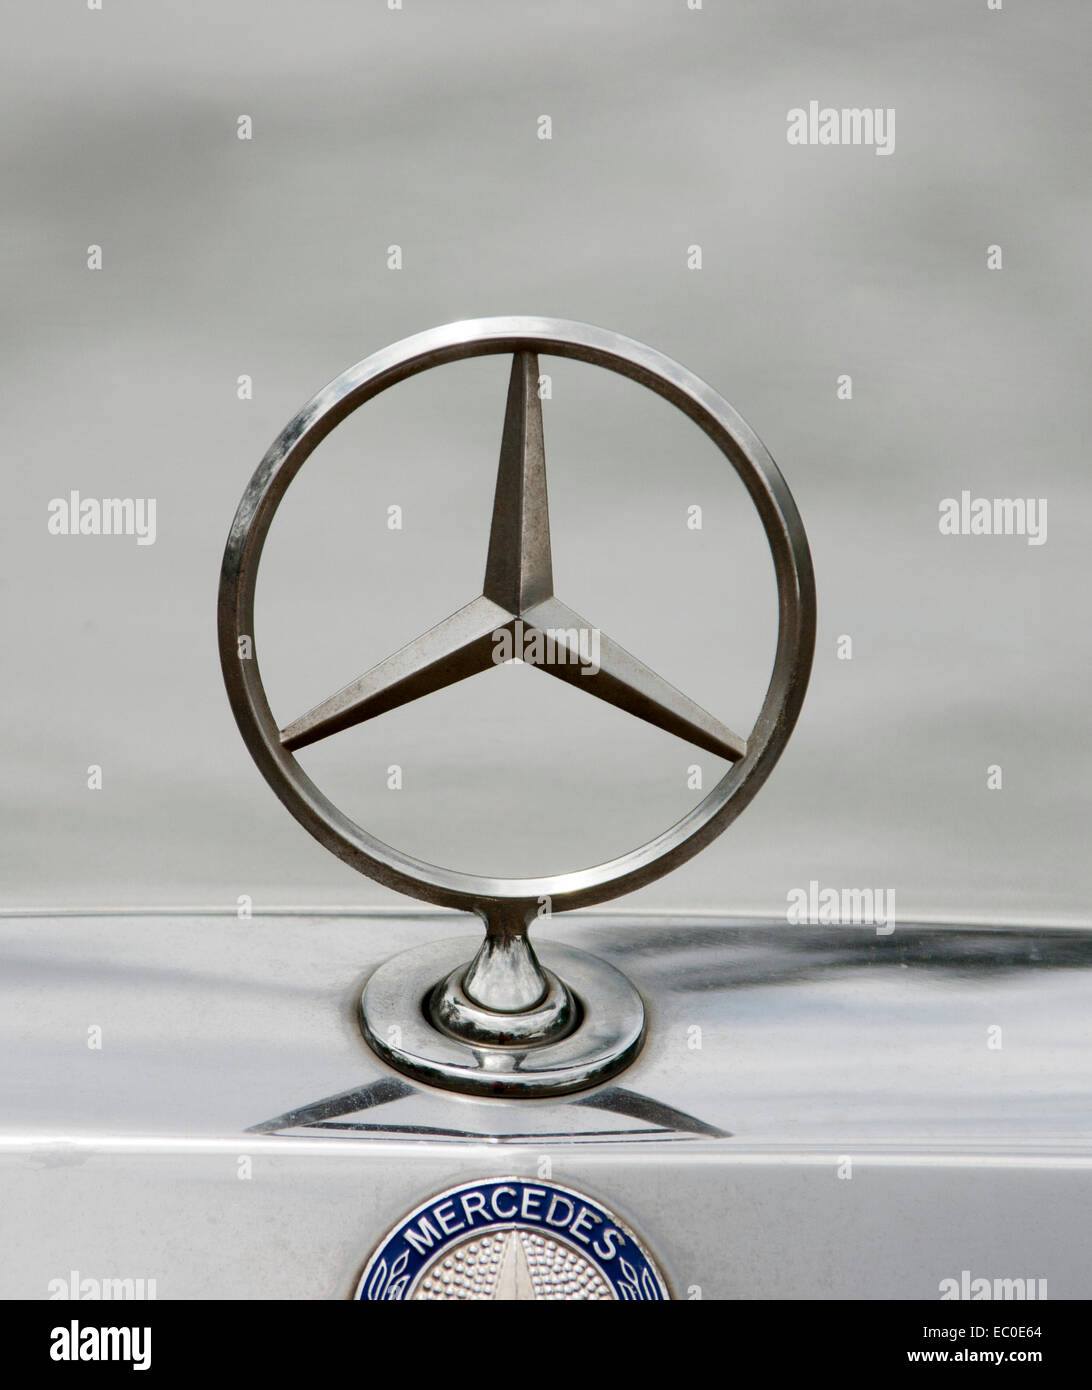 Mercedes plata metalizado coche emblema capot contra el fondo gris pálido, con el nombre del fabricante en plata brillante panel de abajo Foto de stock